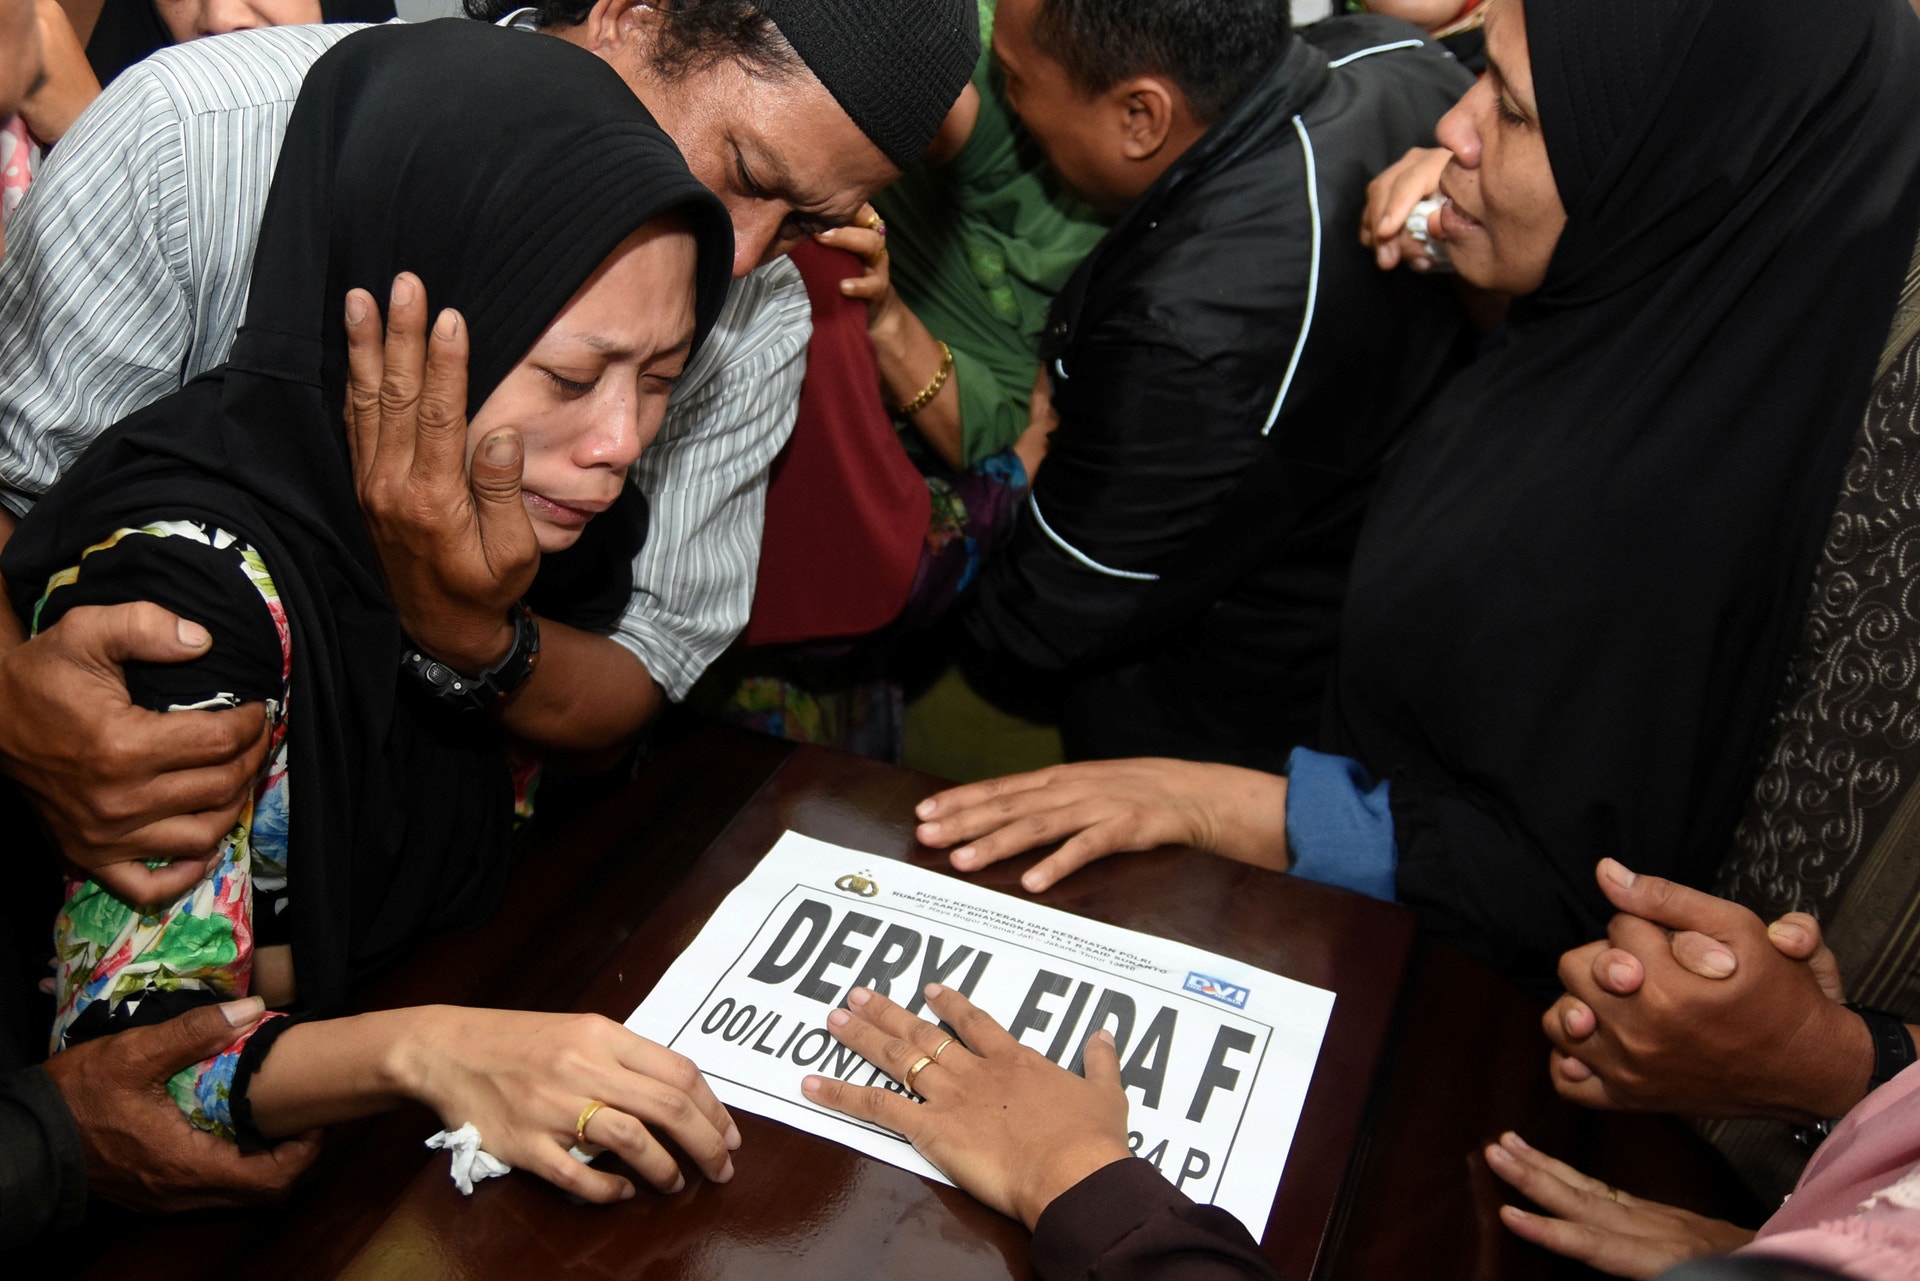  A mulher de um dos passageiros chora durante o funeral do marido. Foto: Risyal Hidayat - Antara Foto via Reuters 